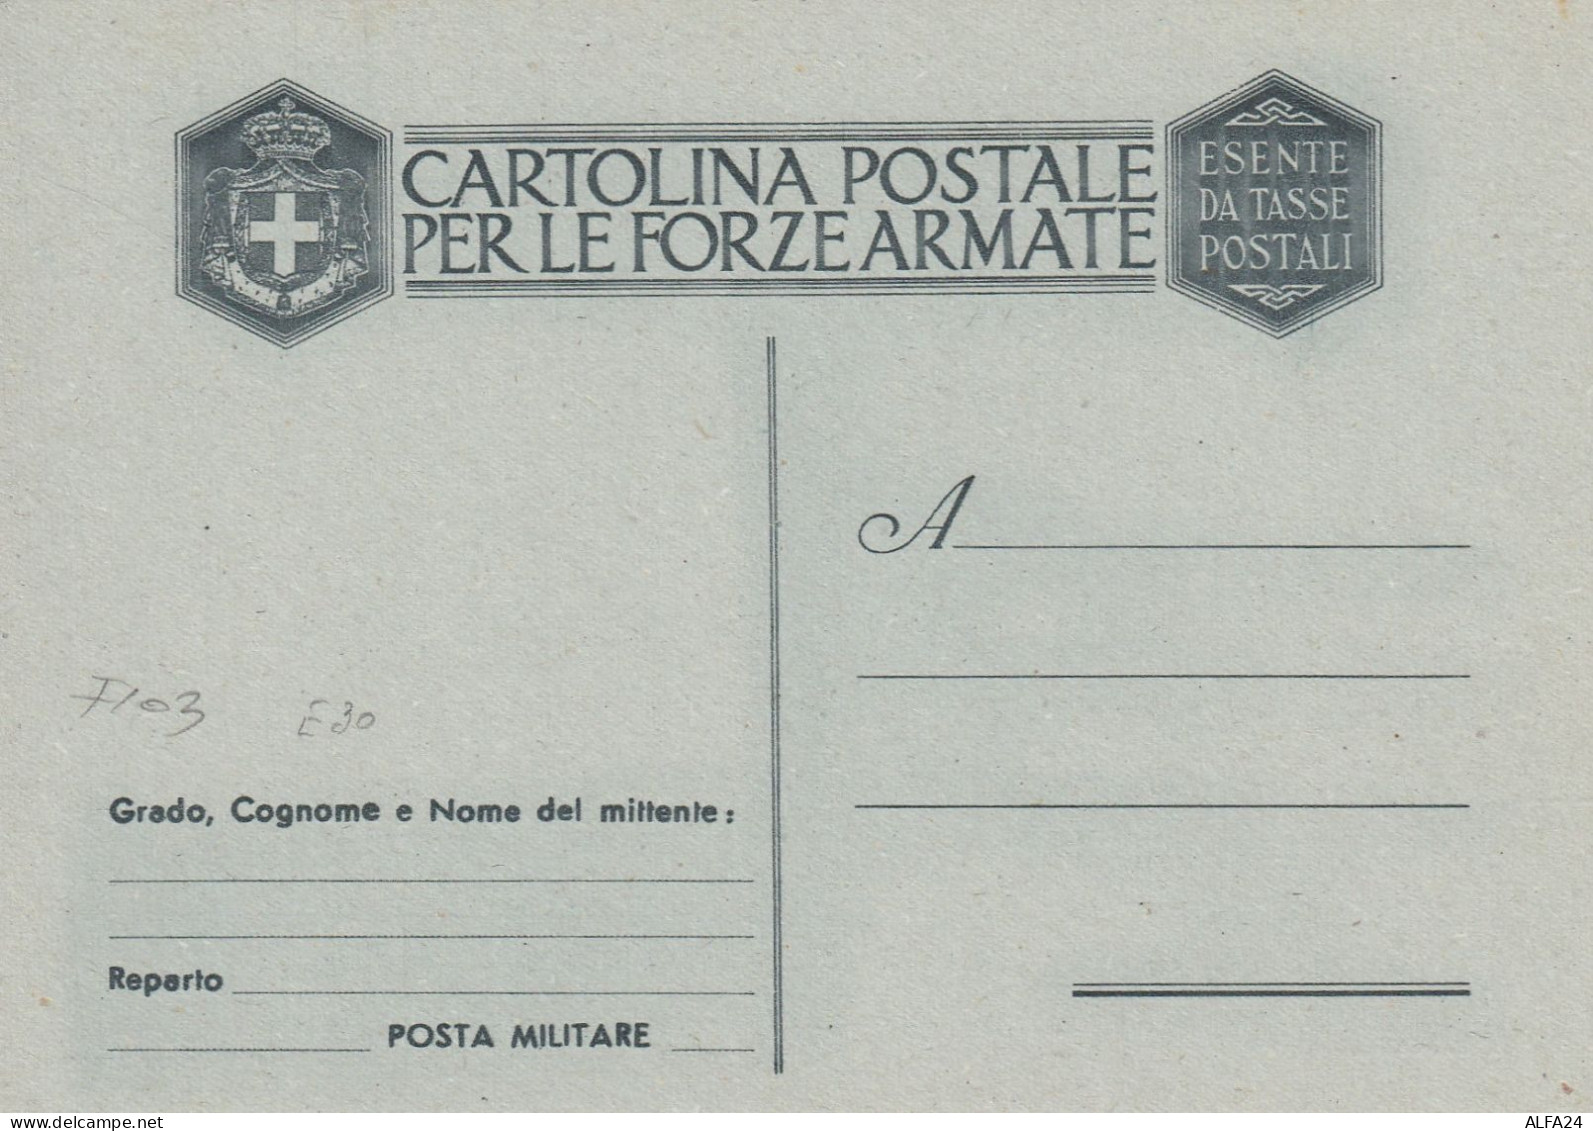 FRANCHIGIA NUOVA 1943 SENZA FASCI ESENTE DA TASSE POSTALI (XT4252 - Franchise